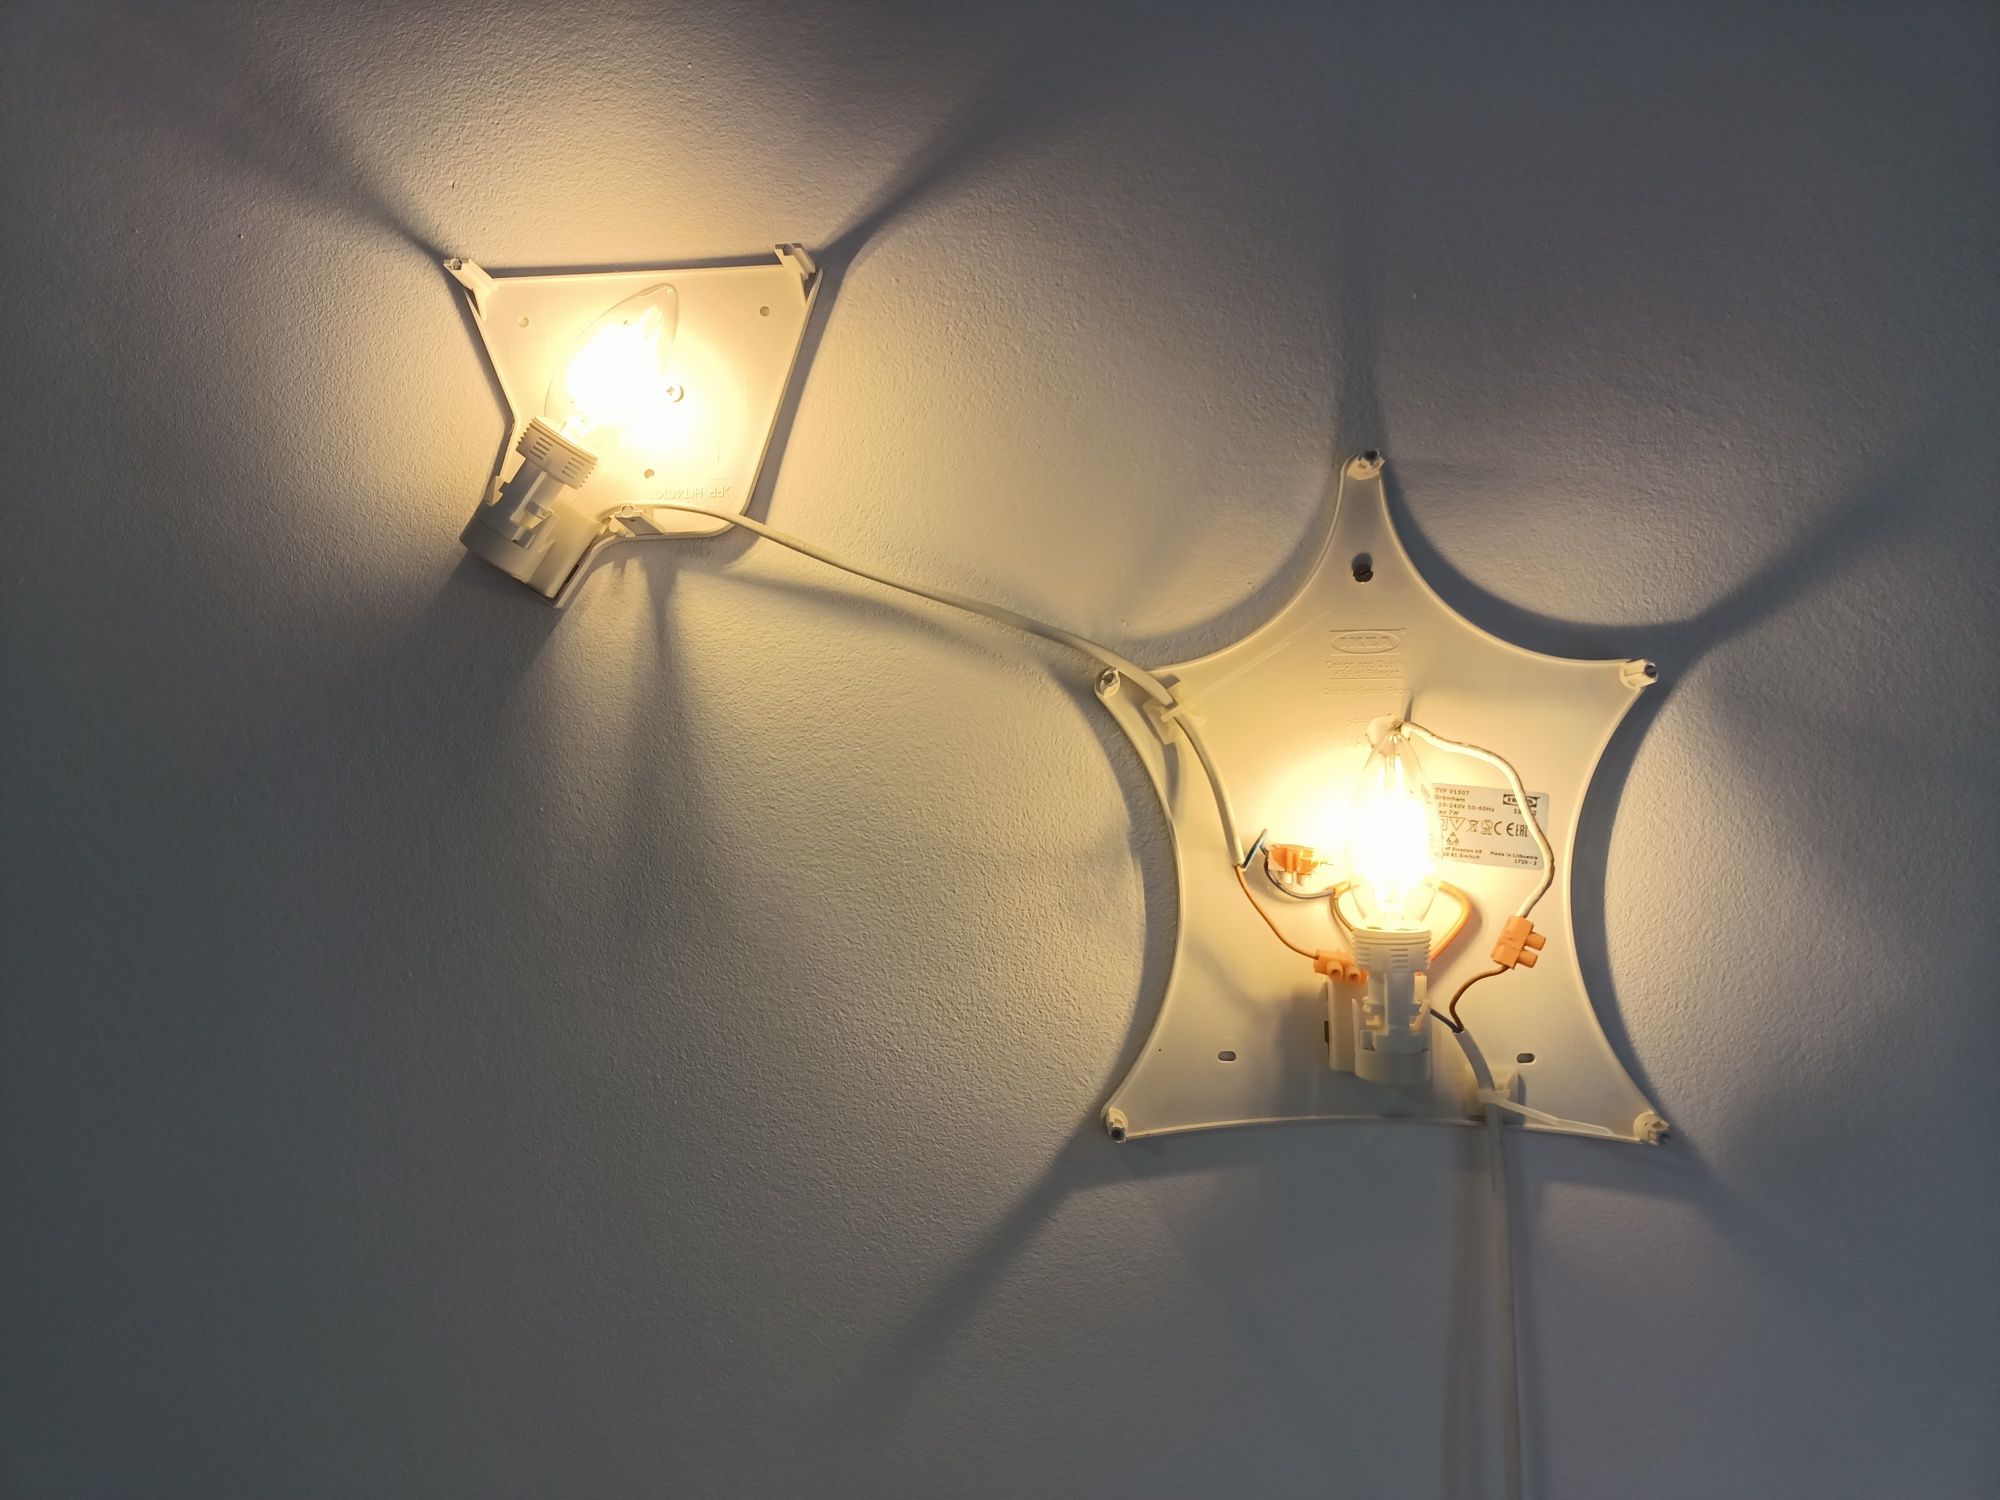 Lampka nocna ścienna IKEA domek + gwiazda 2w1